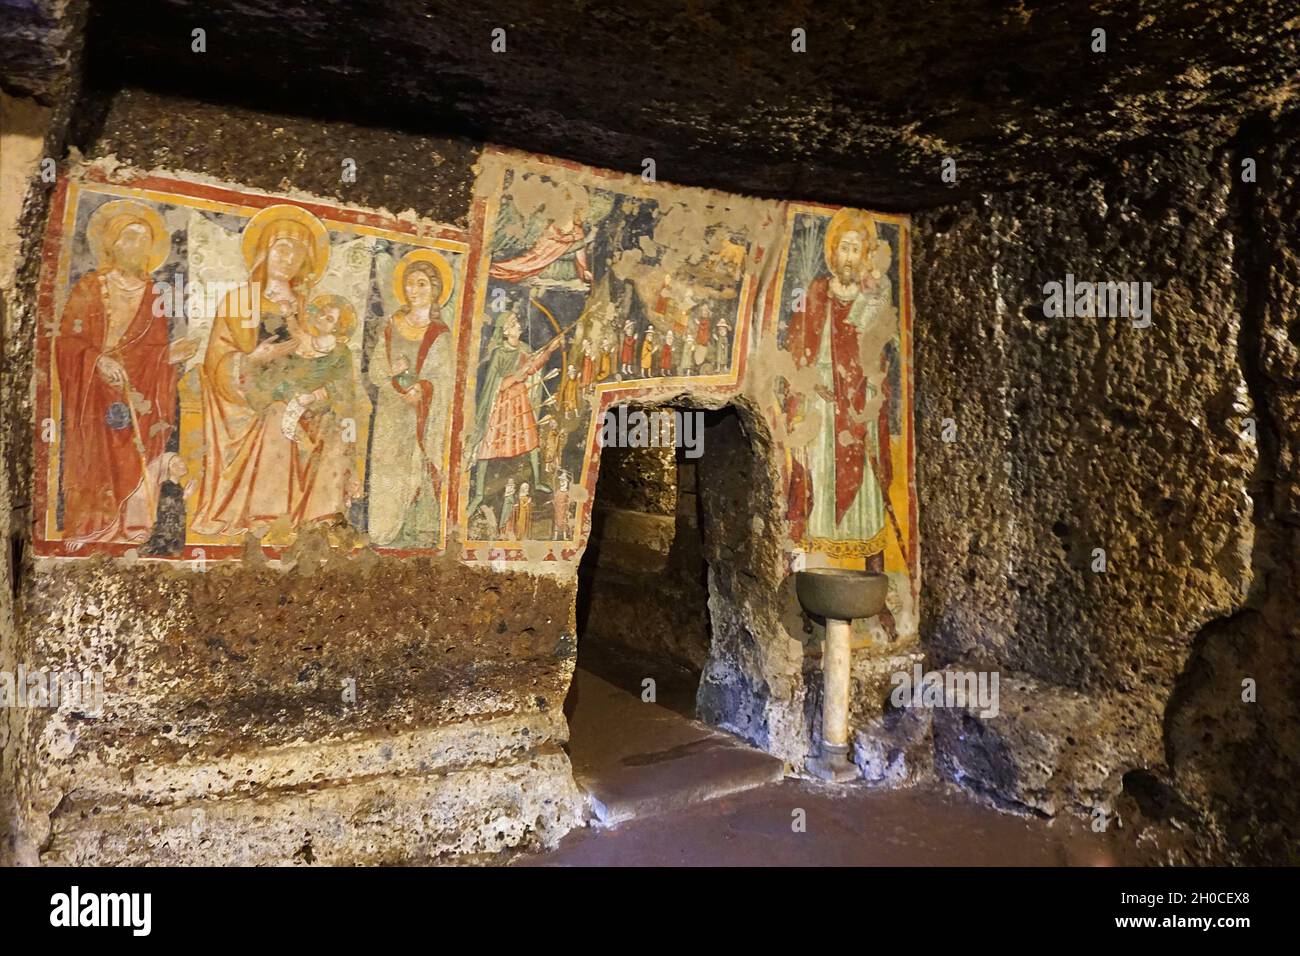 Etruscan Tomb Mithraeum, Fresco, Sutri, Lazio, Italy, Europe Stock Photo